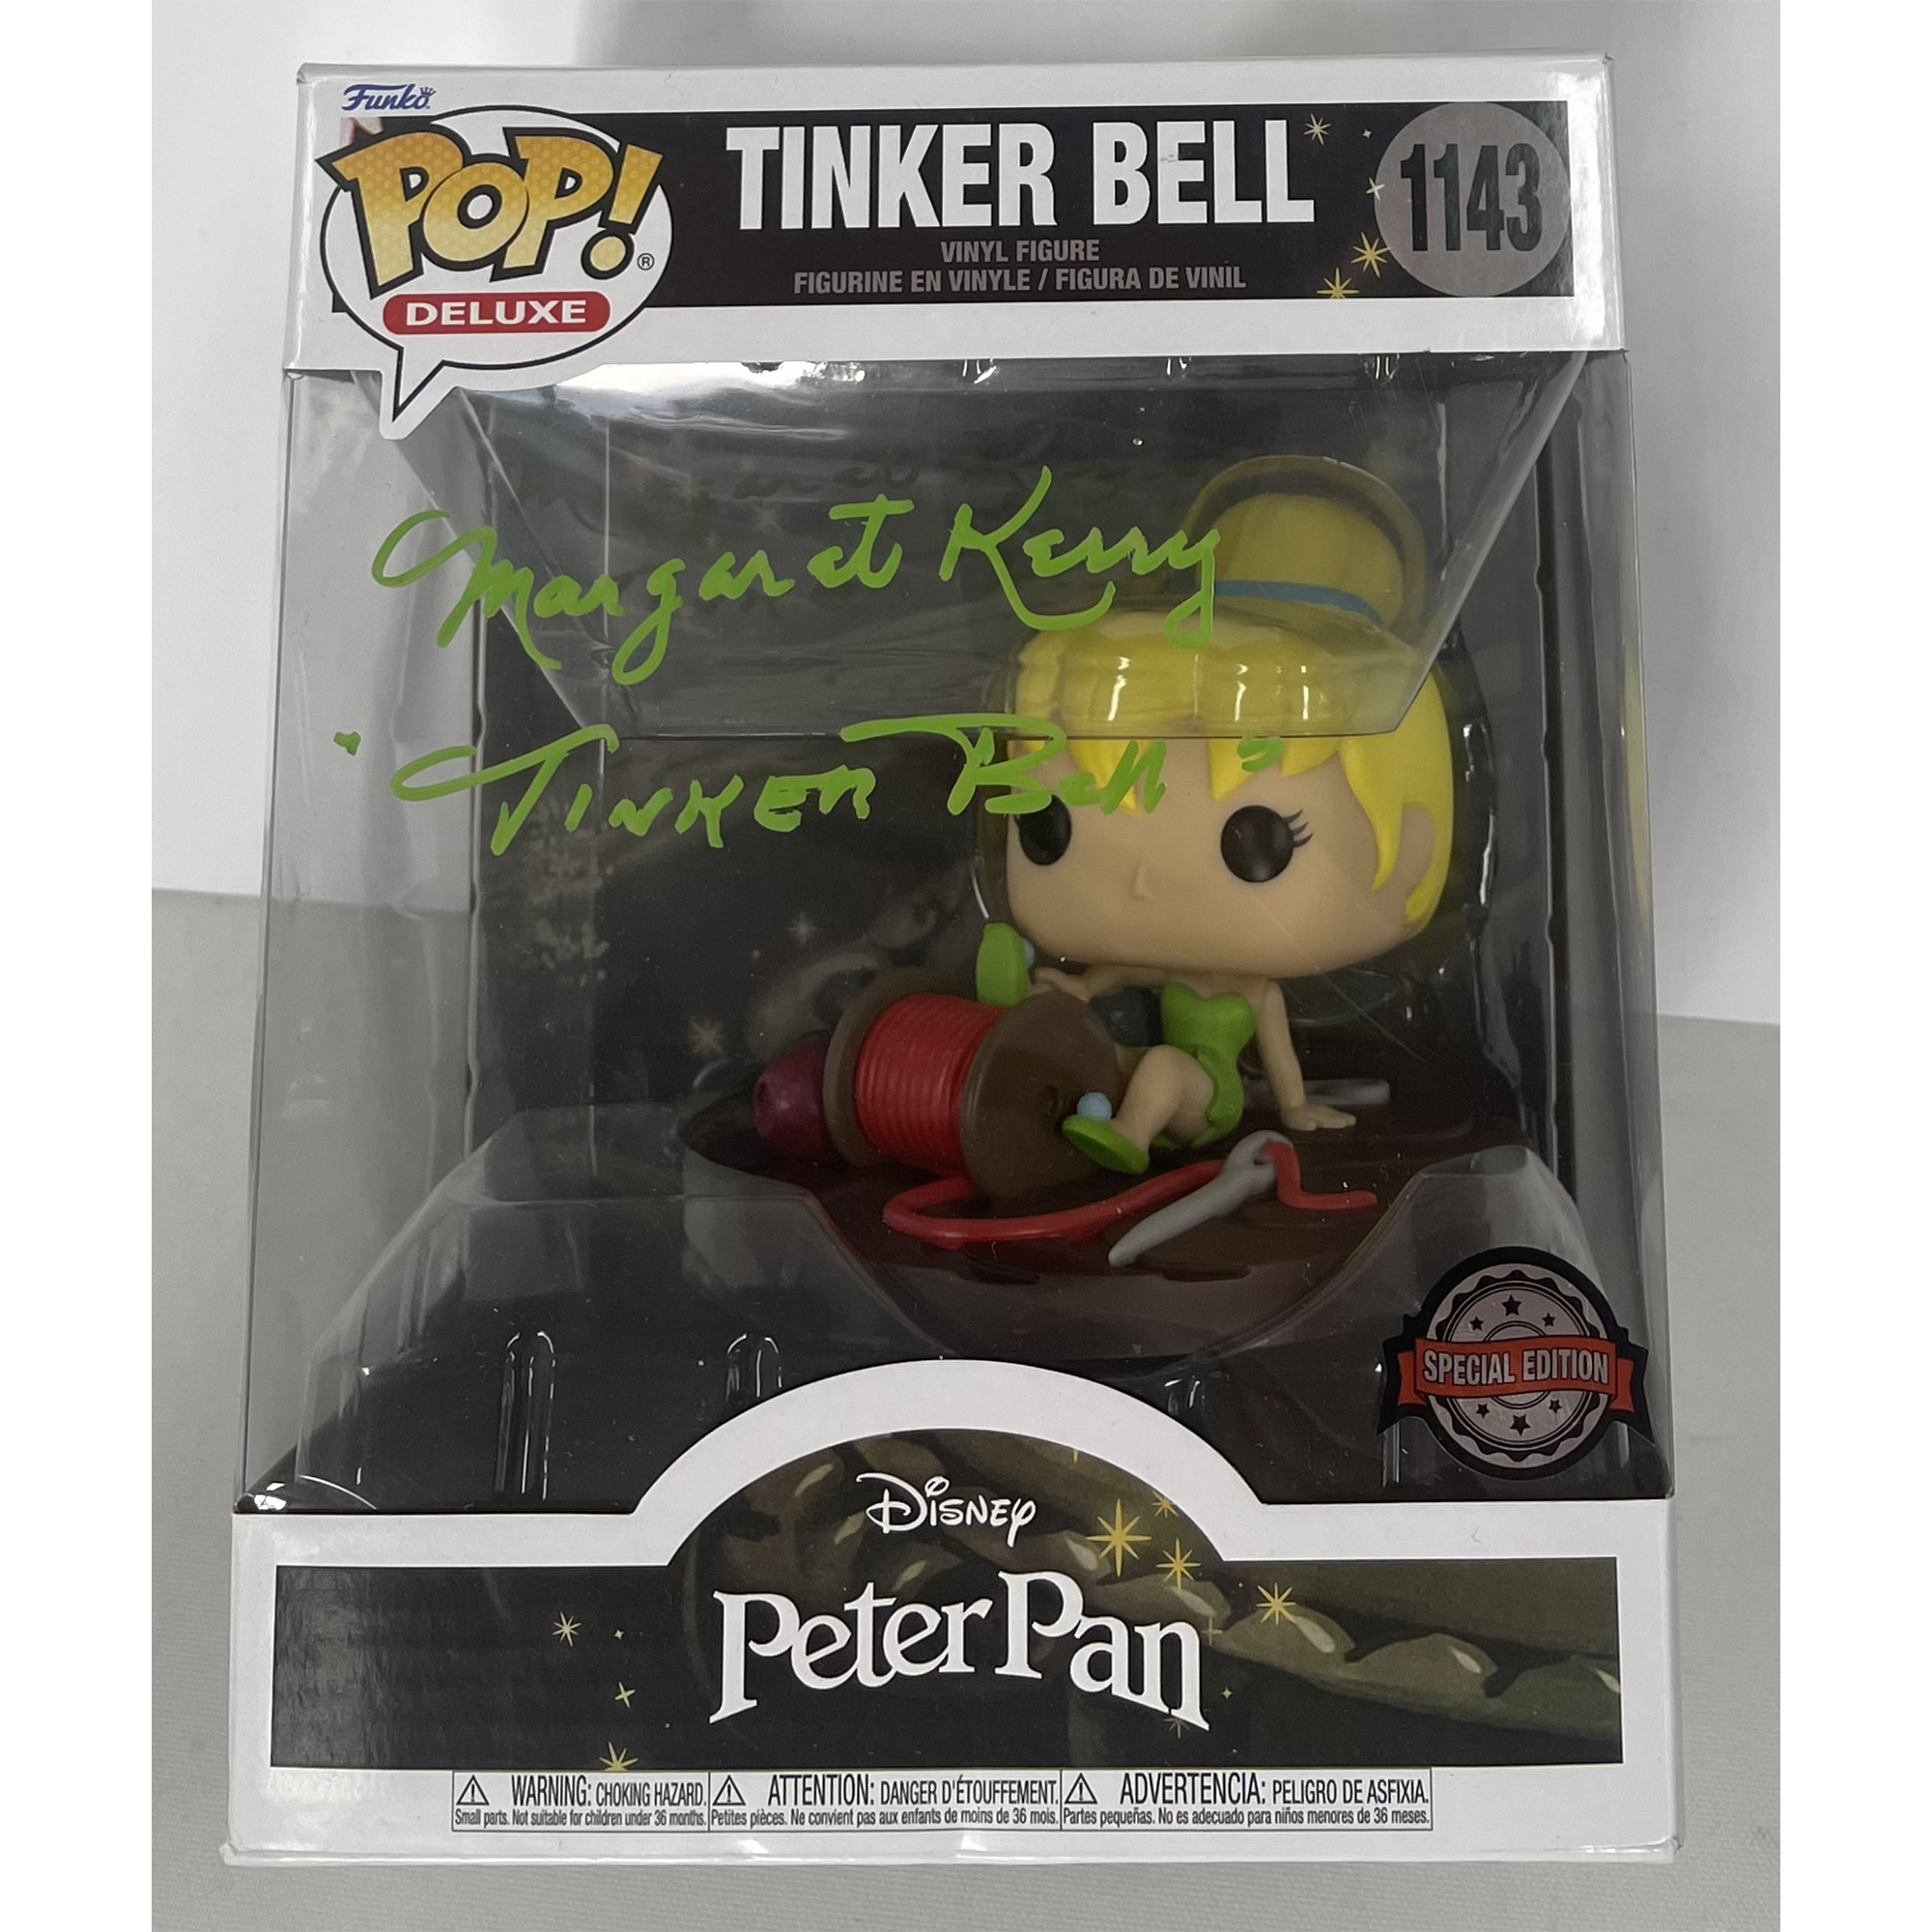 Margaret Kerry – “Peter Pan” Tinker Bell #1143 Autog...